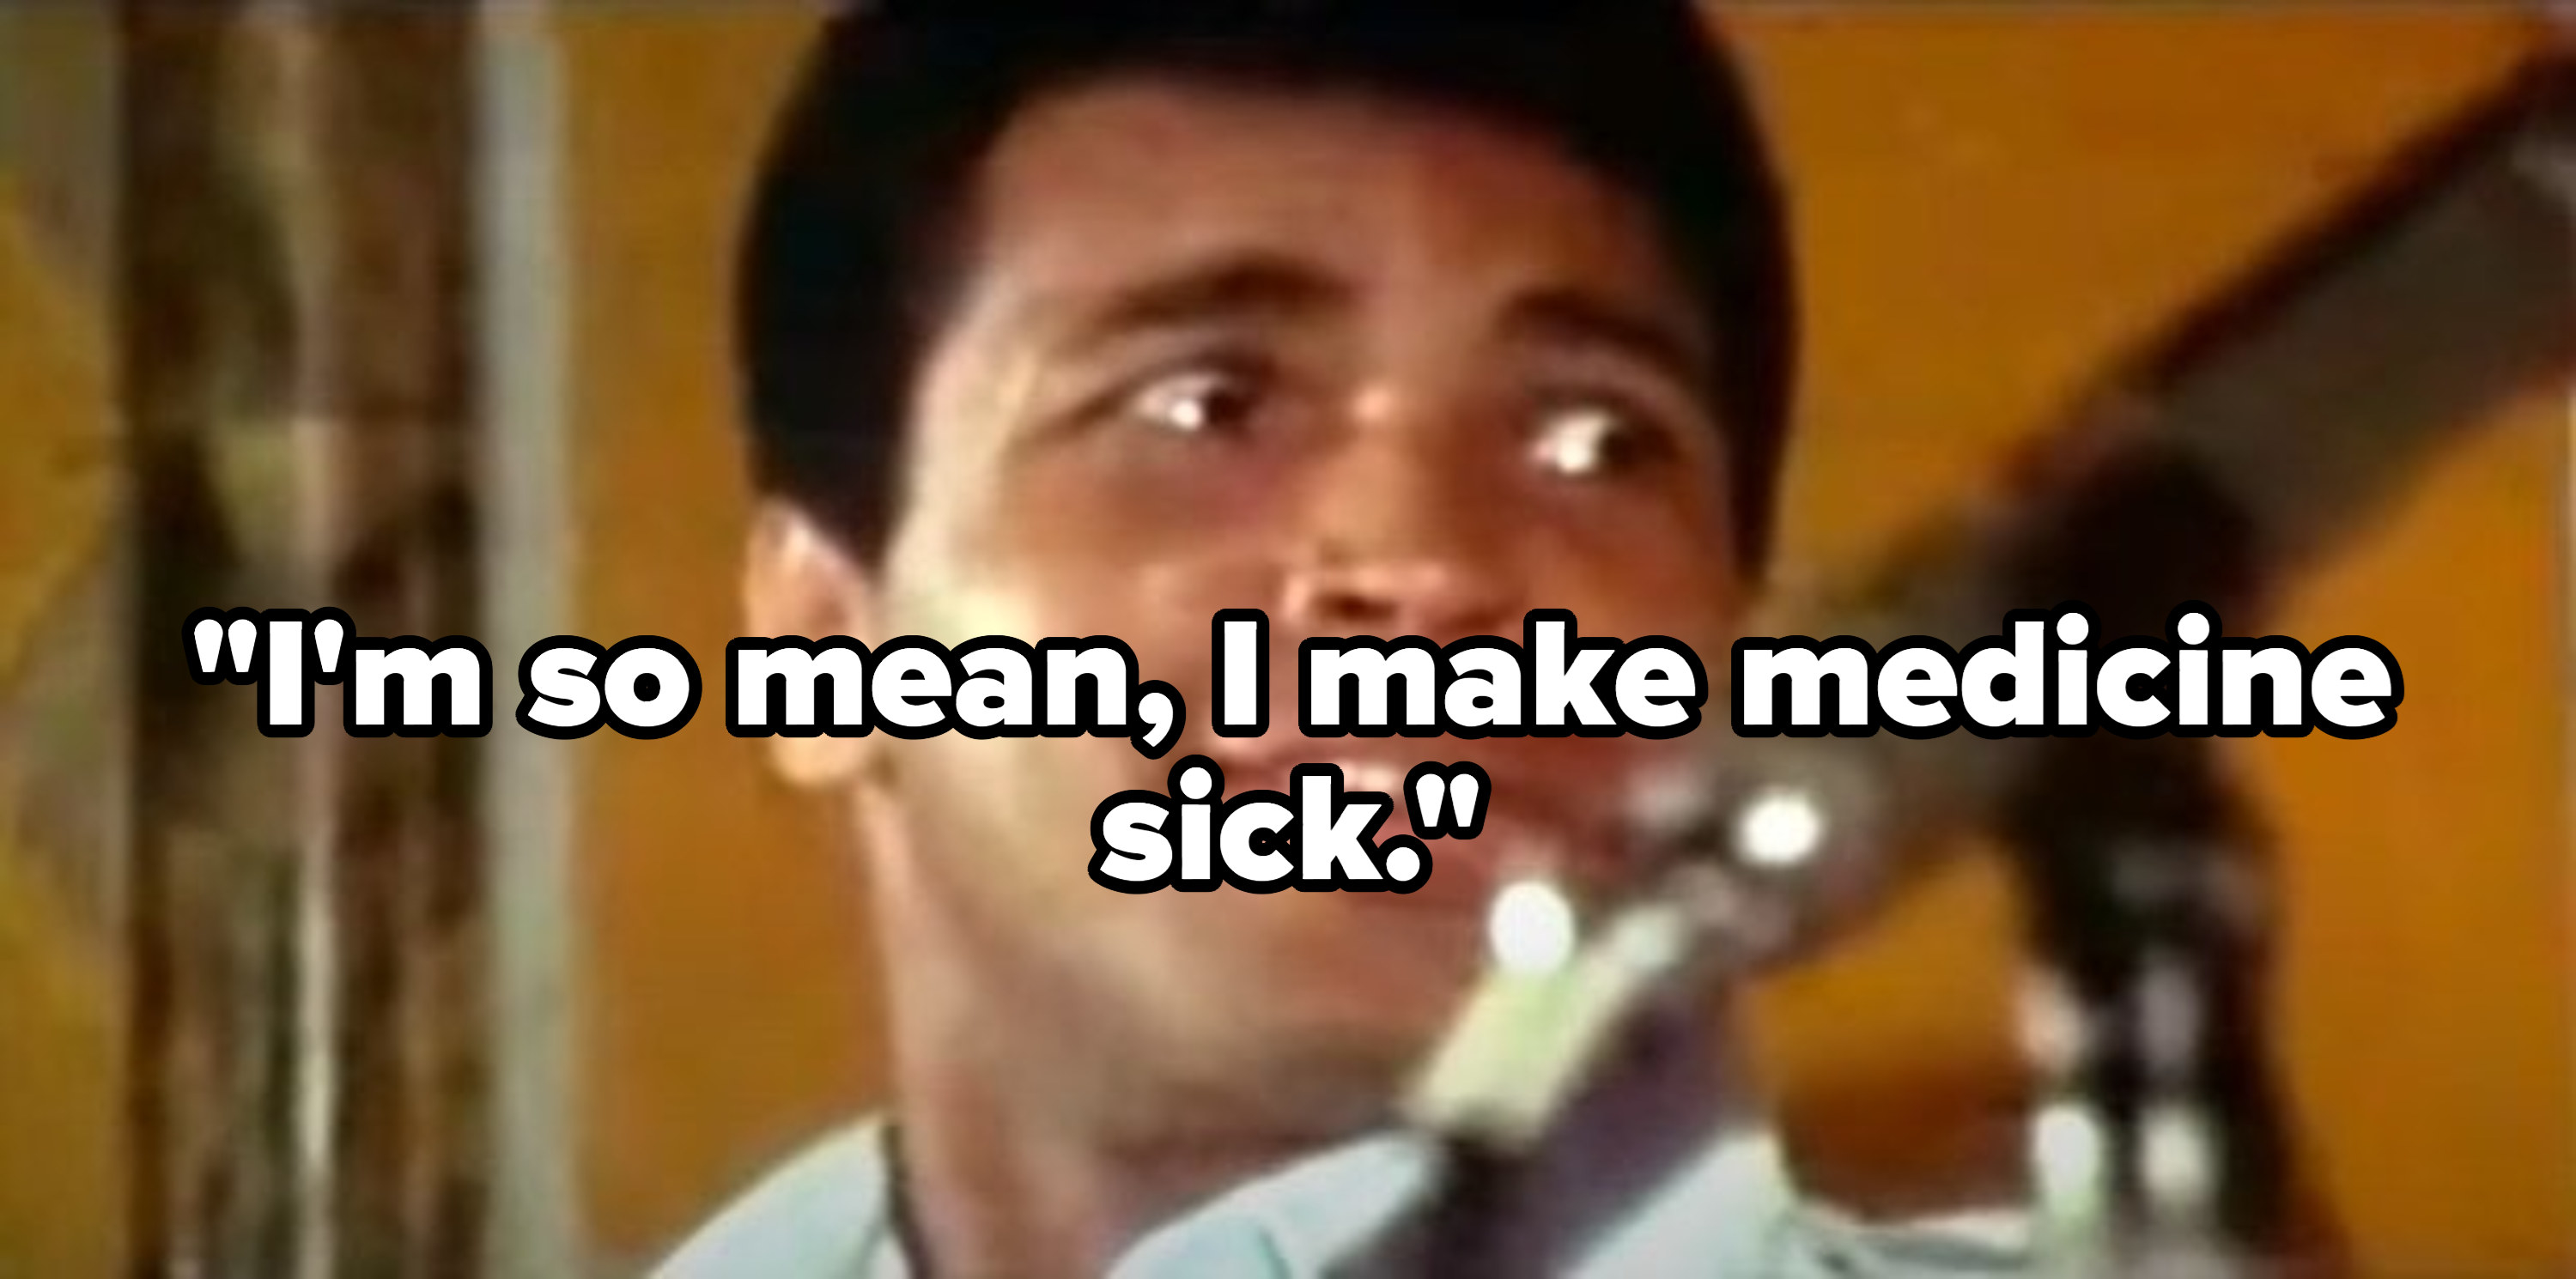 穆罕默德·阿里在新闻发布会上引用,“我# x27; m所以的意思是,我做医学sick"